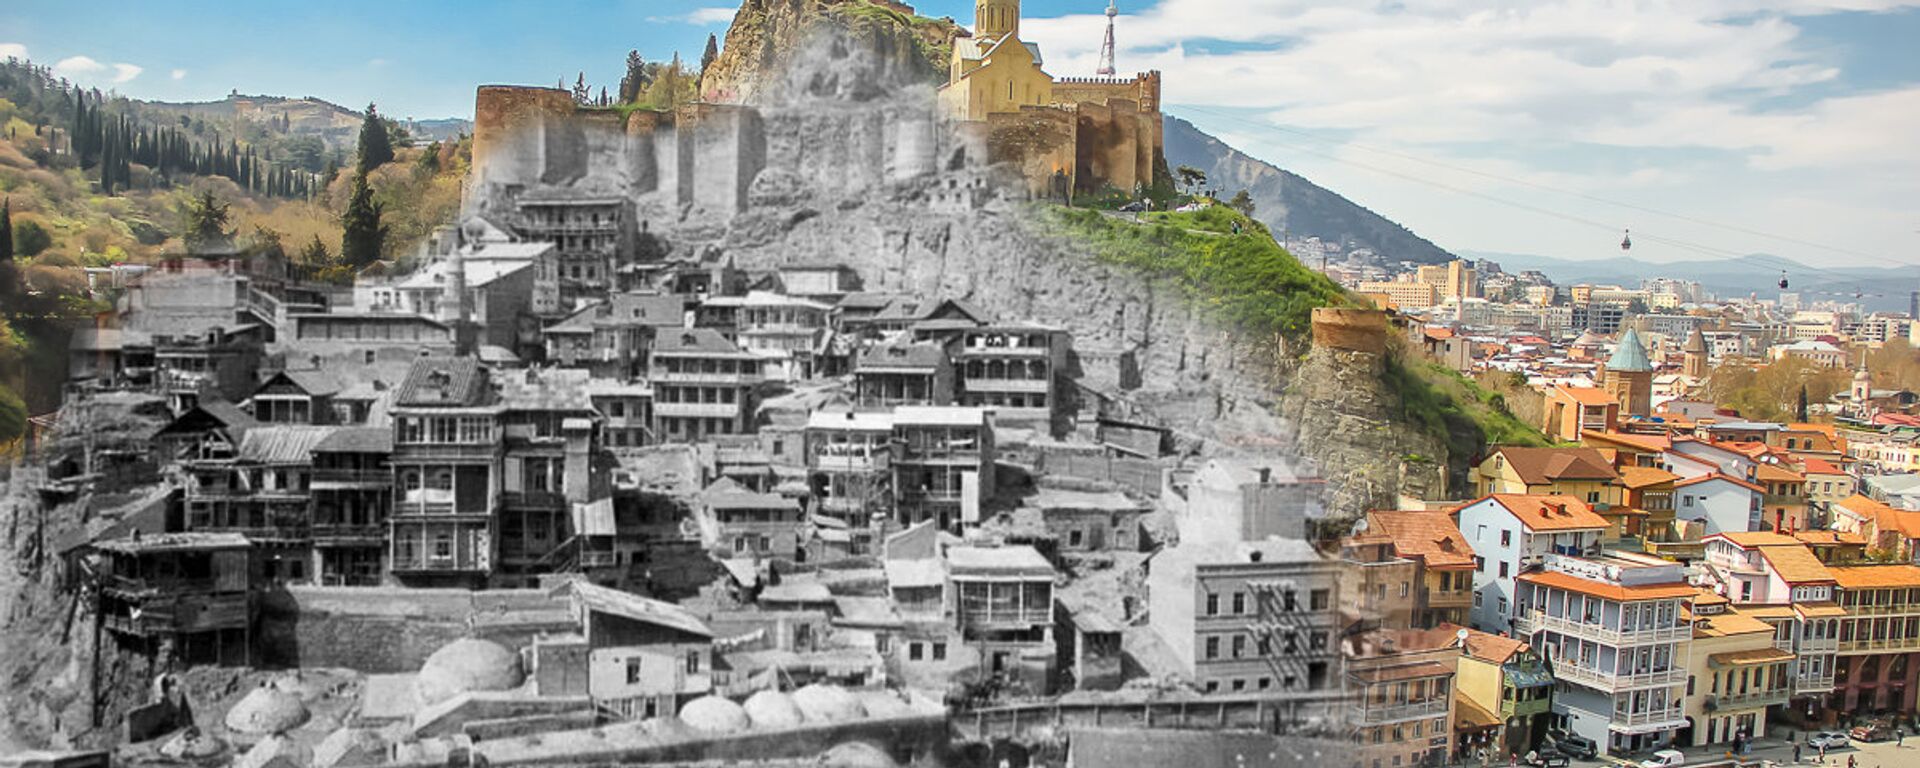 Фотоколлаж. Тифлис - Тбилиси. Старый город - Sputnik Грузия, 1920, 11.01.2021